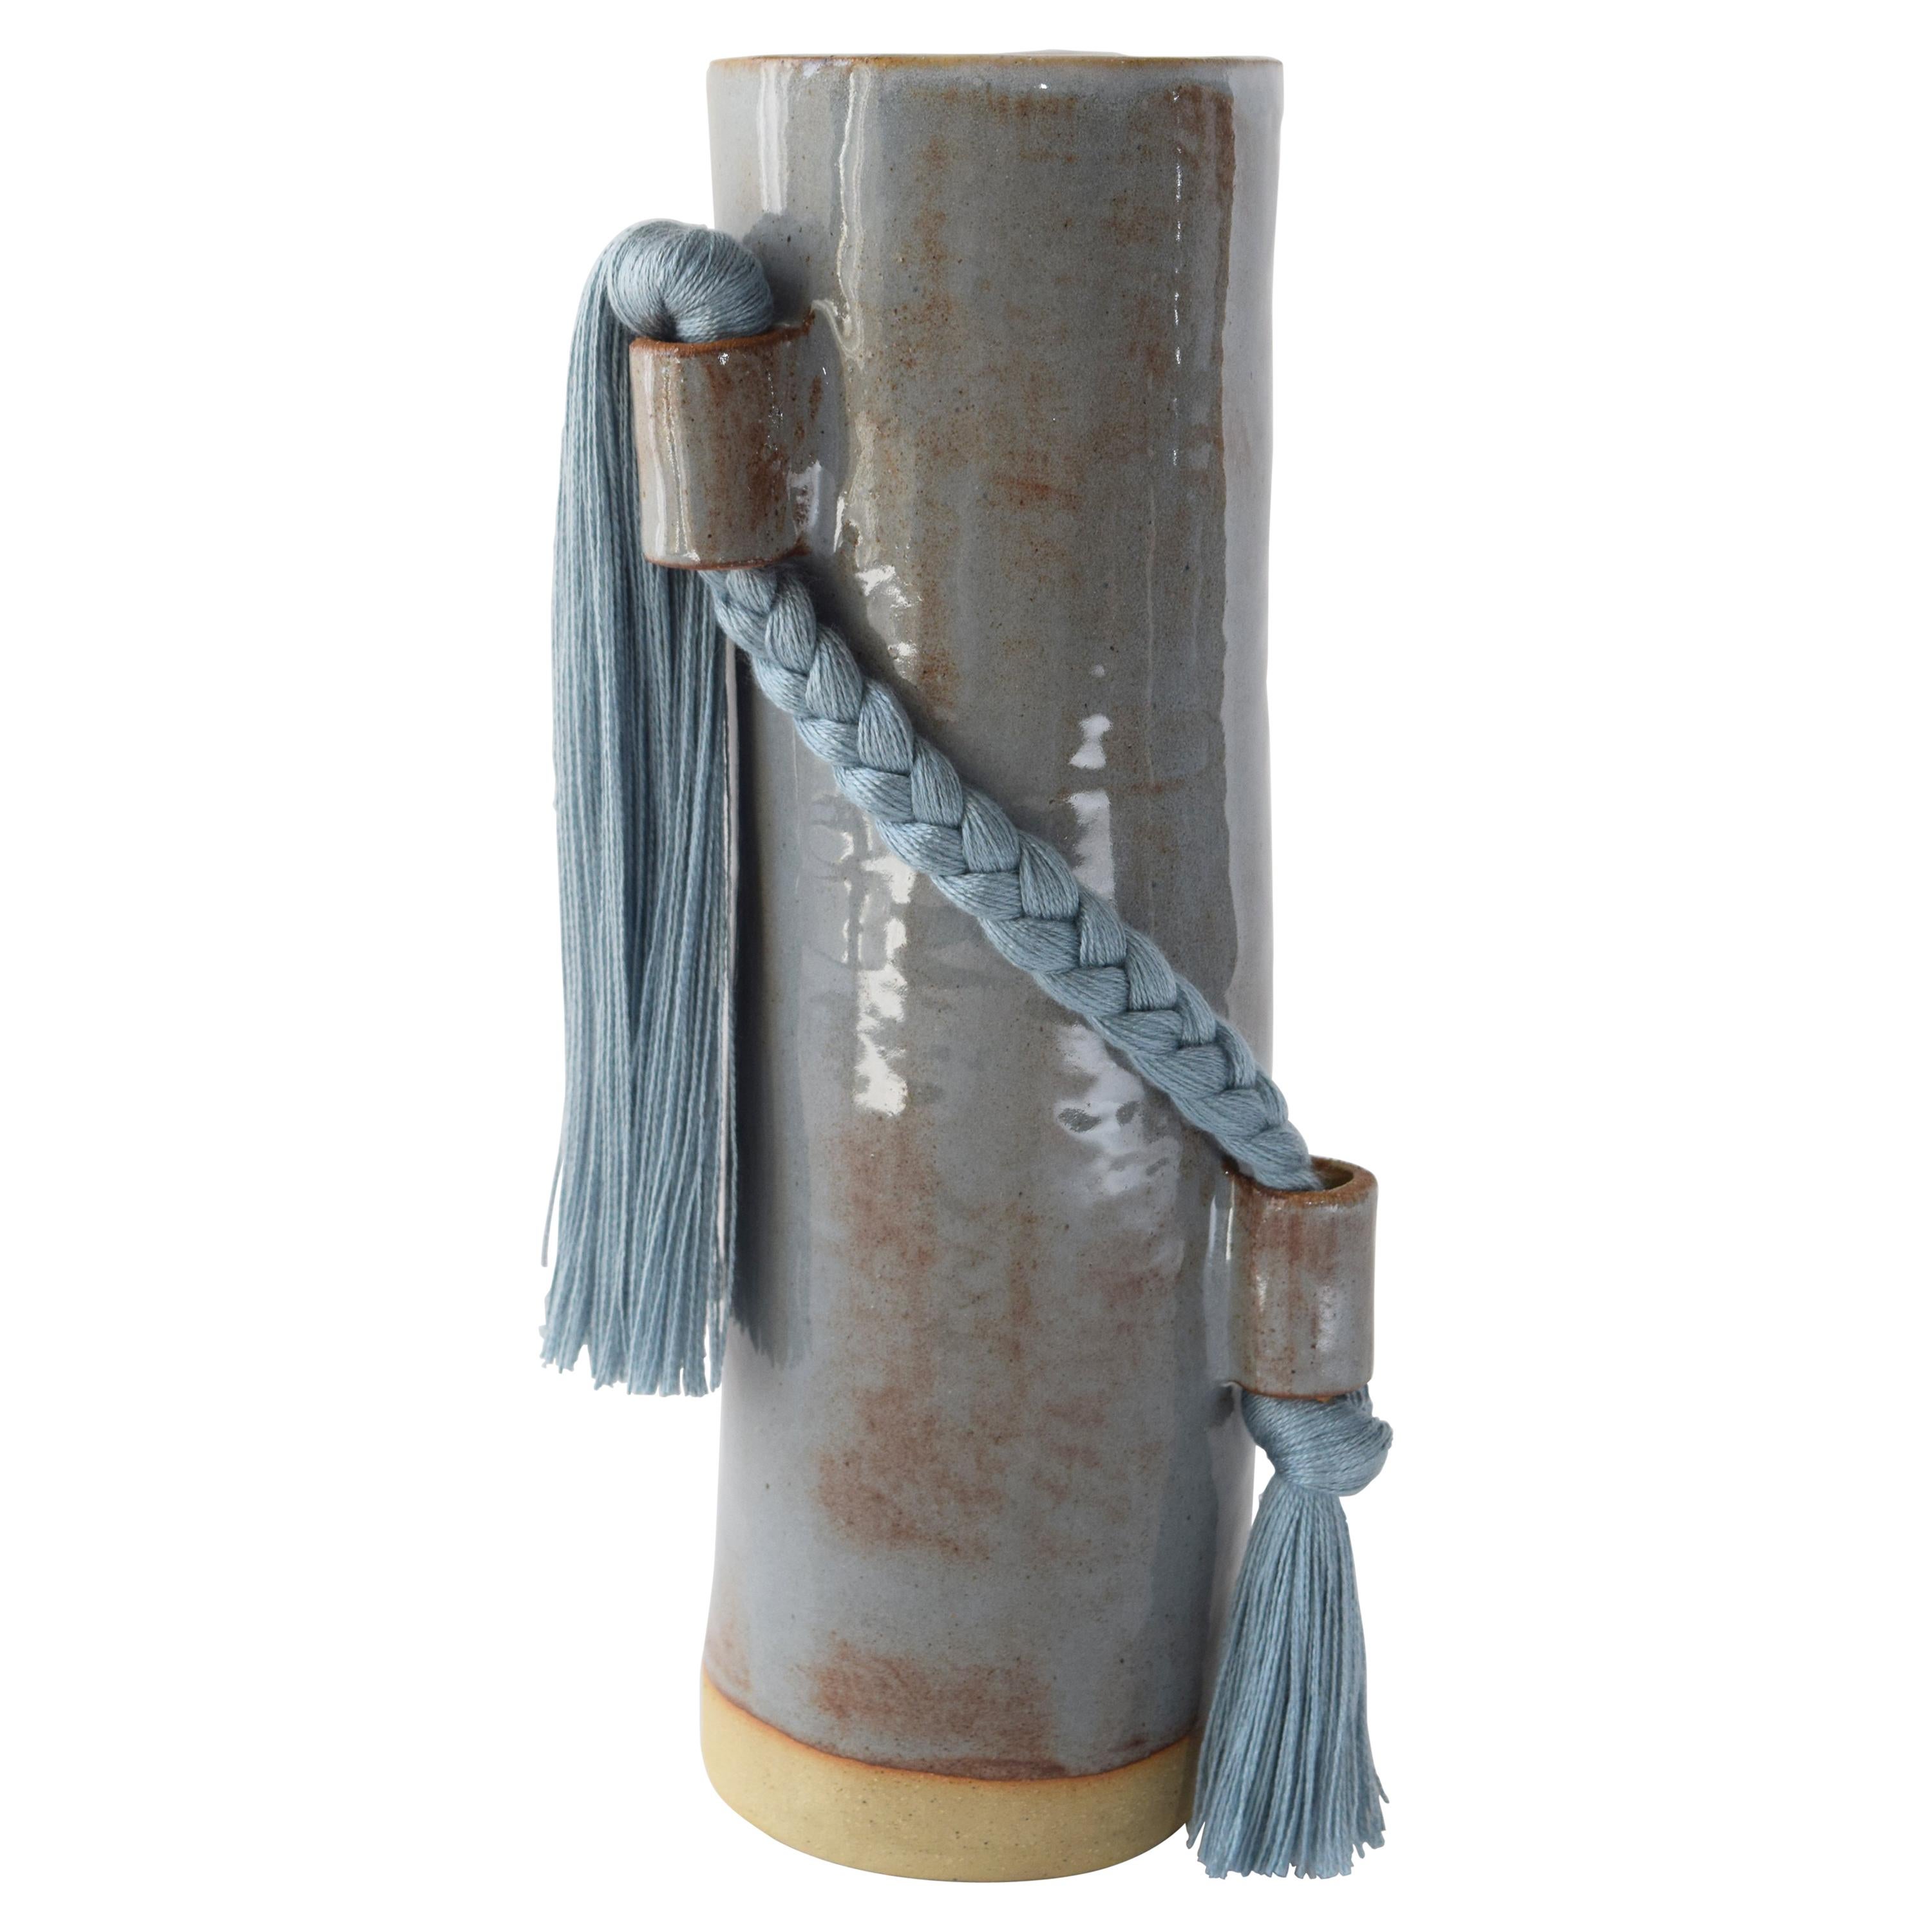 Vase en céramique fait à la main n° 695 en bleu clair avec tresse et frange en tencel bleu